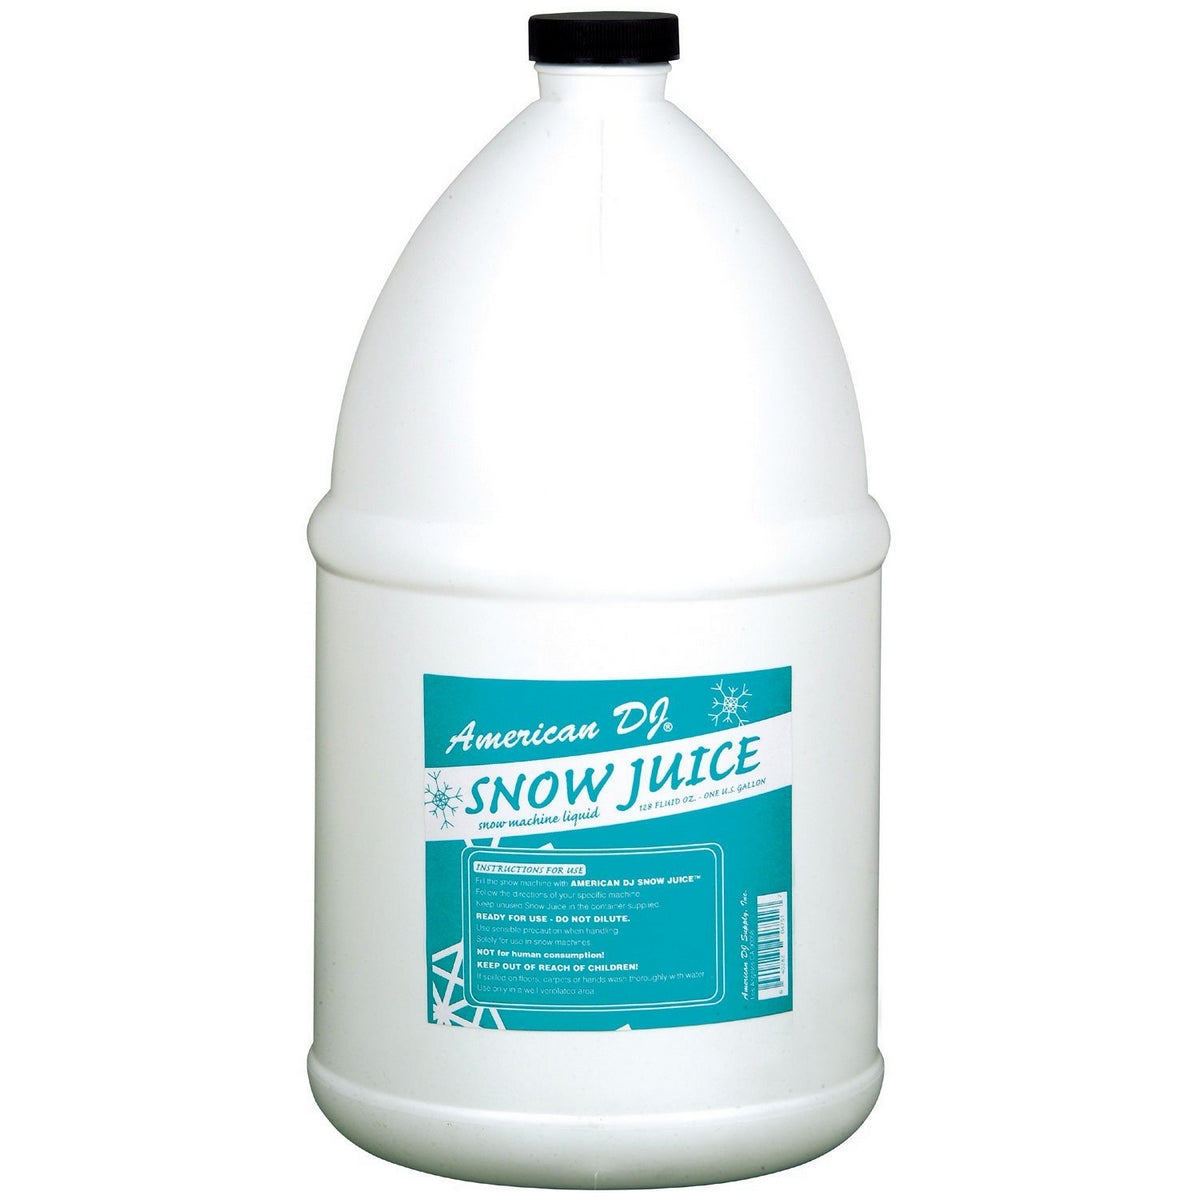 ADJ Snow Gal | Snow Juice